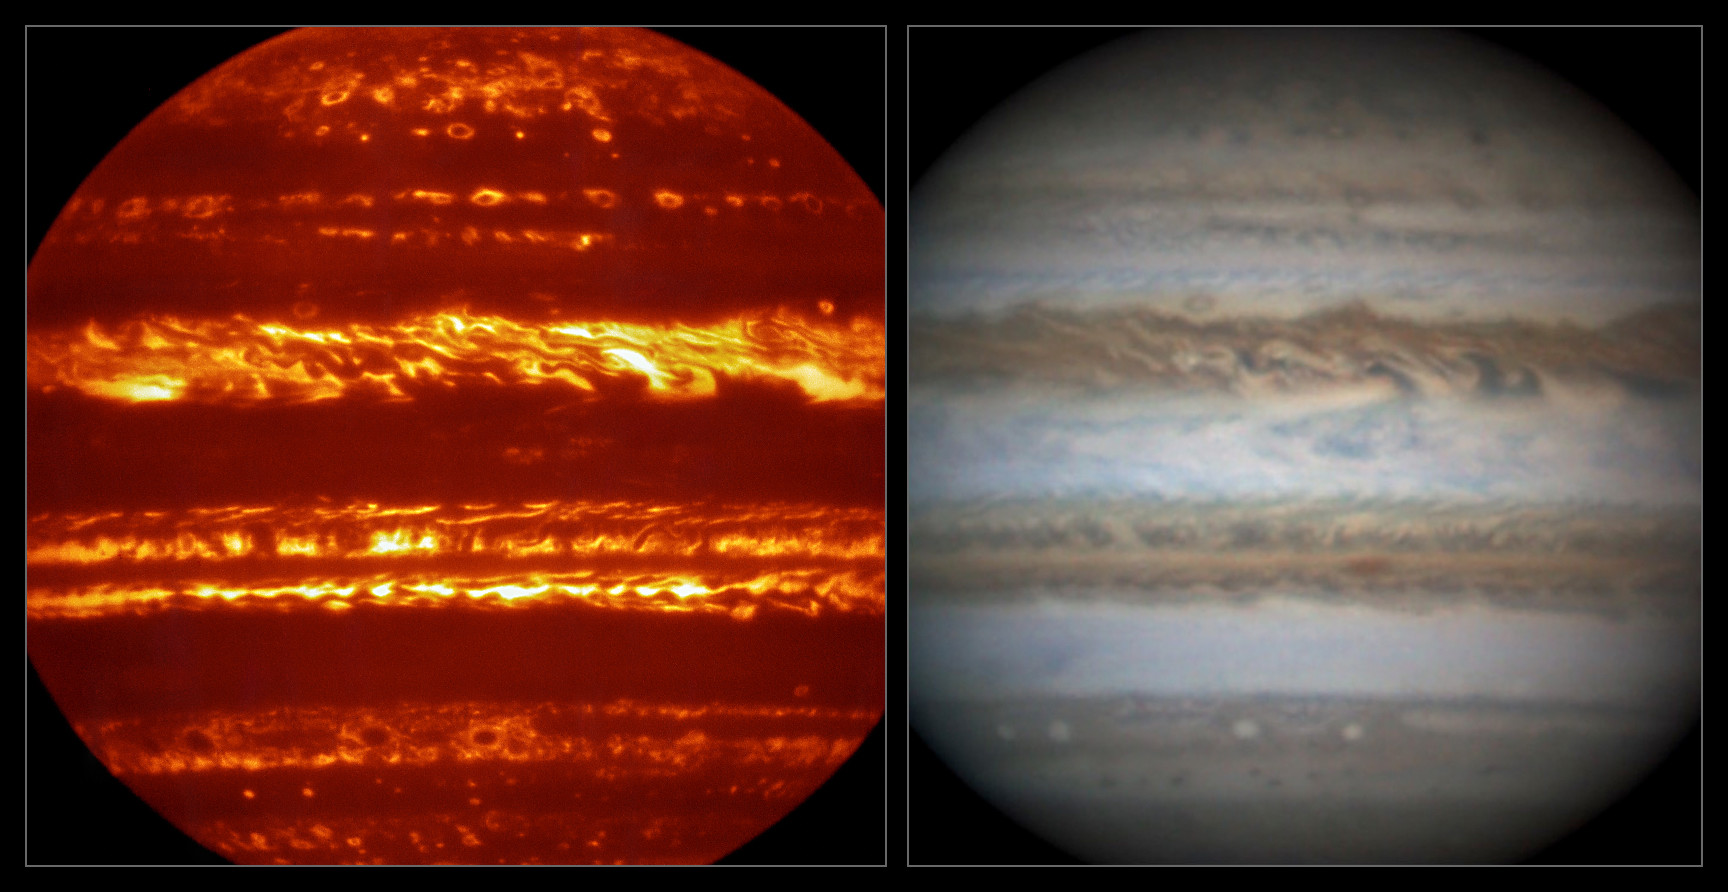 Comparaison des spectacles de lumière visible de VISIR et de Jupiter